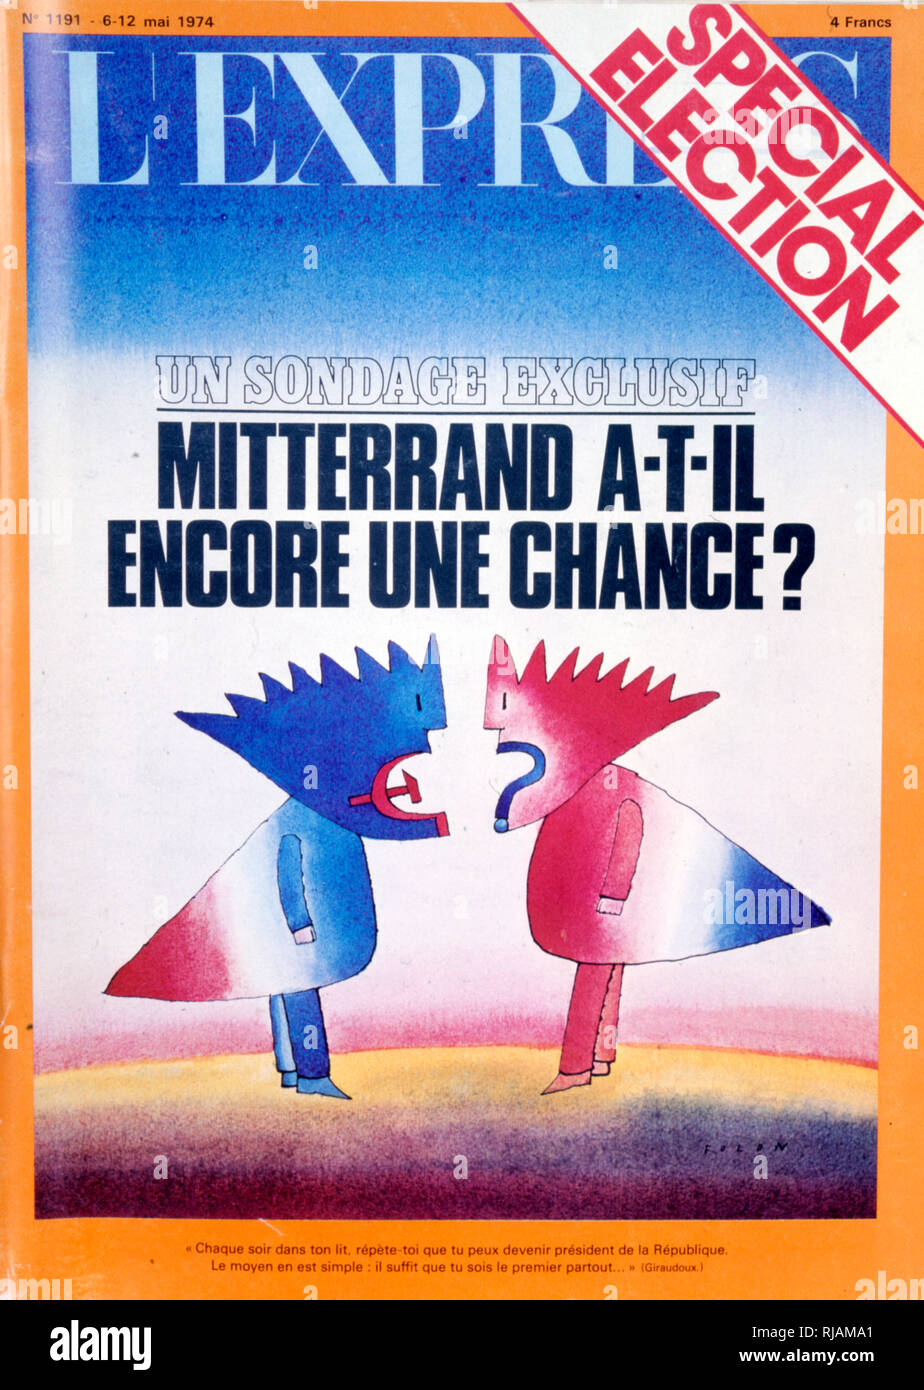 Couverture du magazine français "L'Express" au cours des élections présidentielles en France en 1974, après la mort du président Georges Pompidou. Ils sont allés à un deuxième tour, et ont été remportées par Valery Giscard d'Estaing par une marge de 1,6  %. Banque D'Images